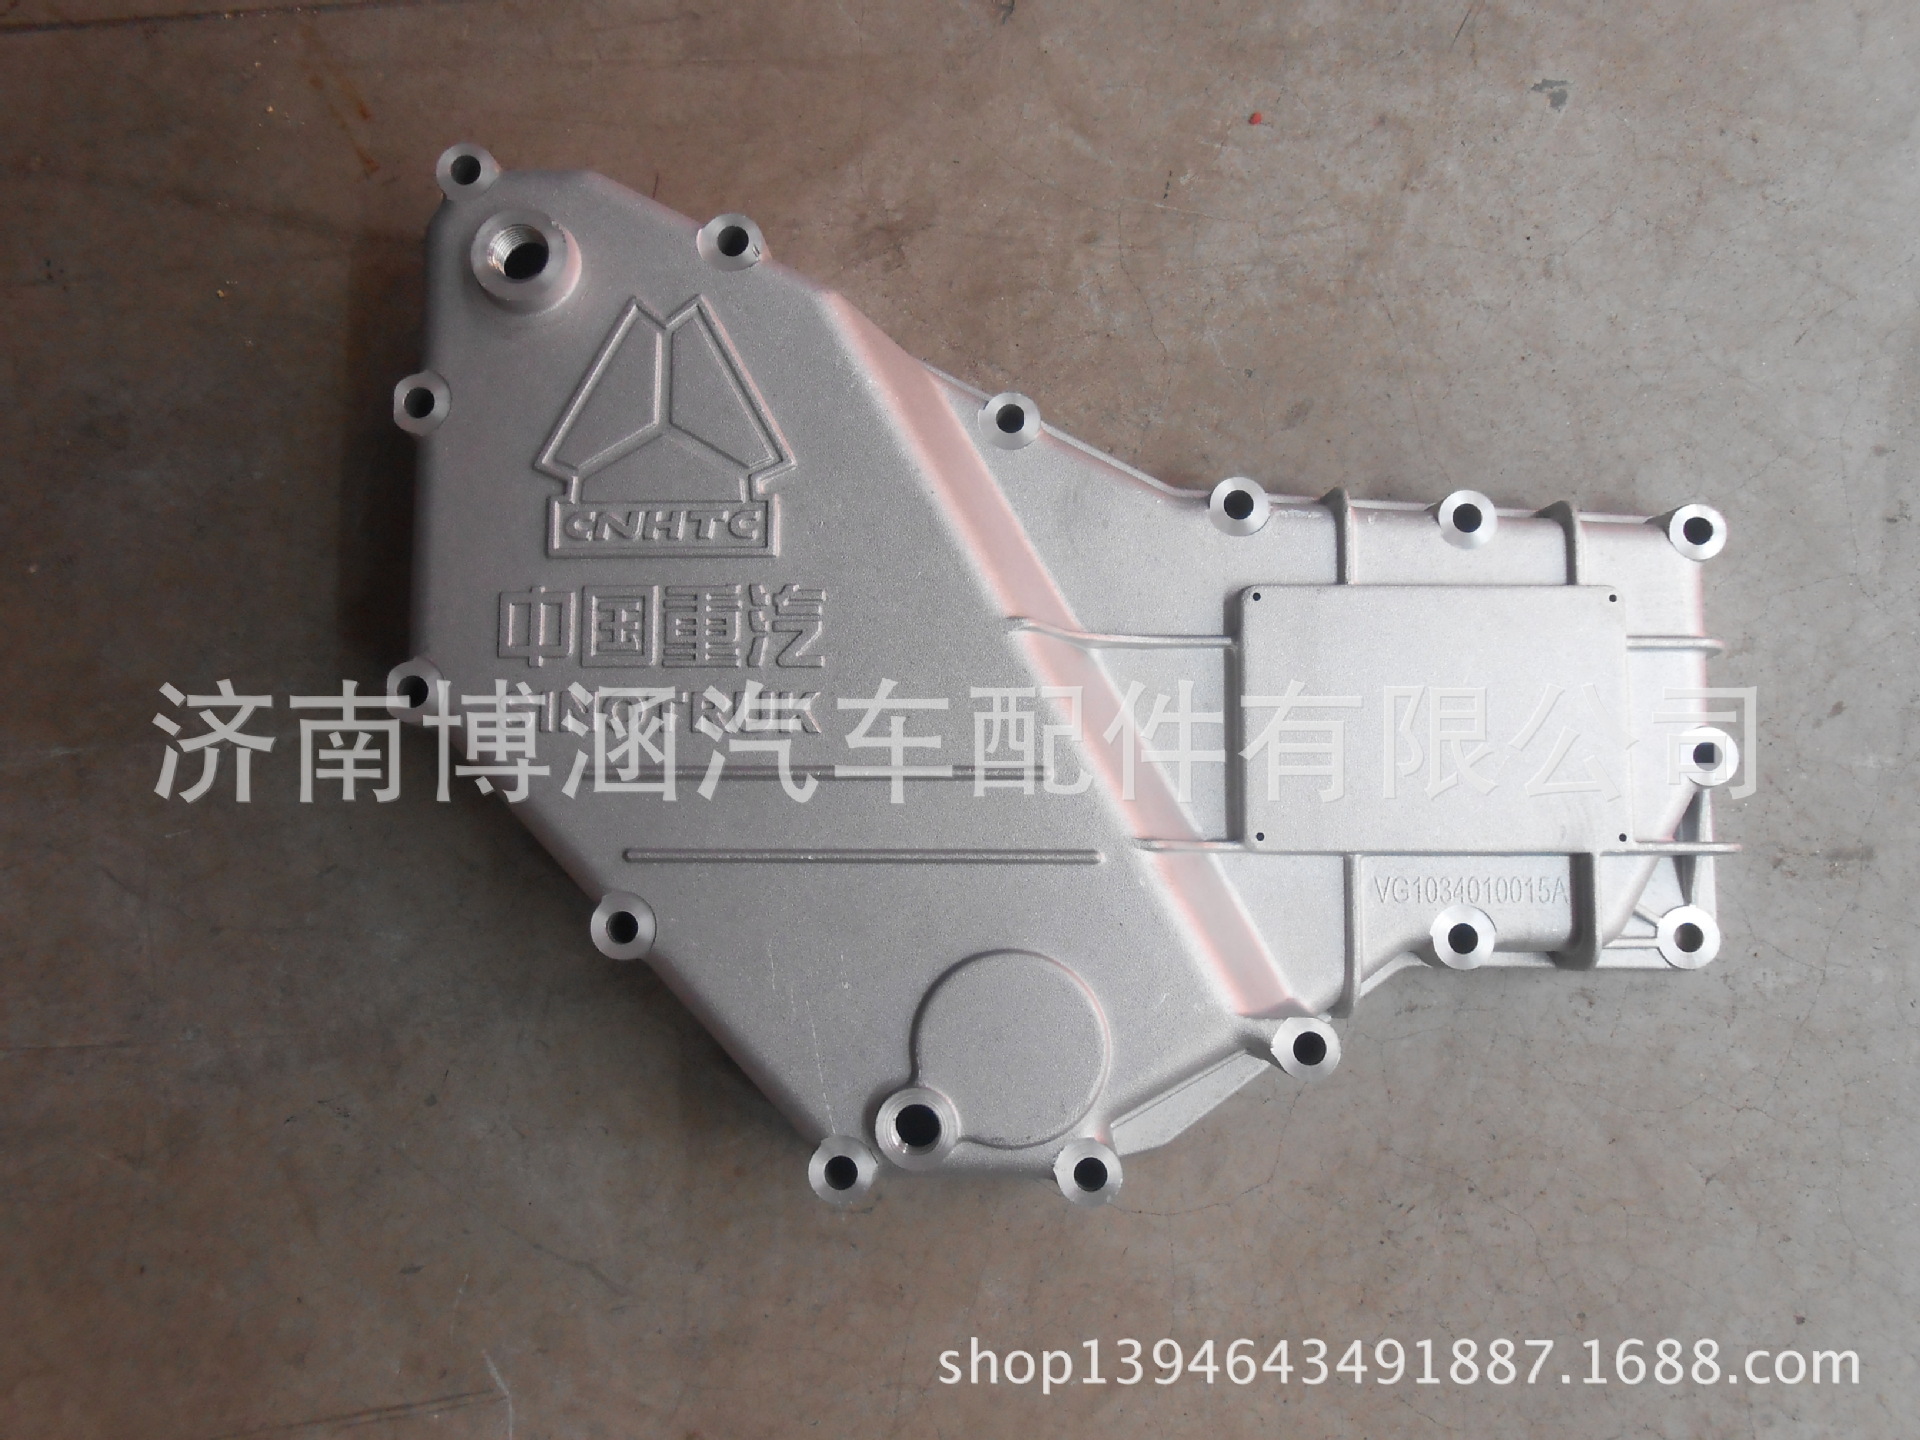 厂家直销 优质机油冷却器盖 散热器盖 中国重汽 VG1034010015A示例图1